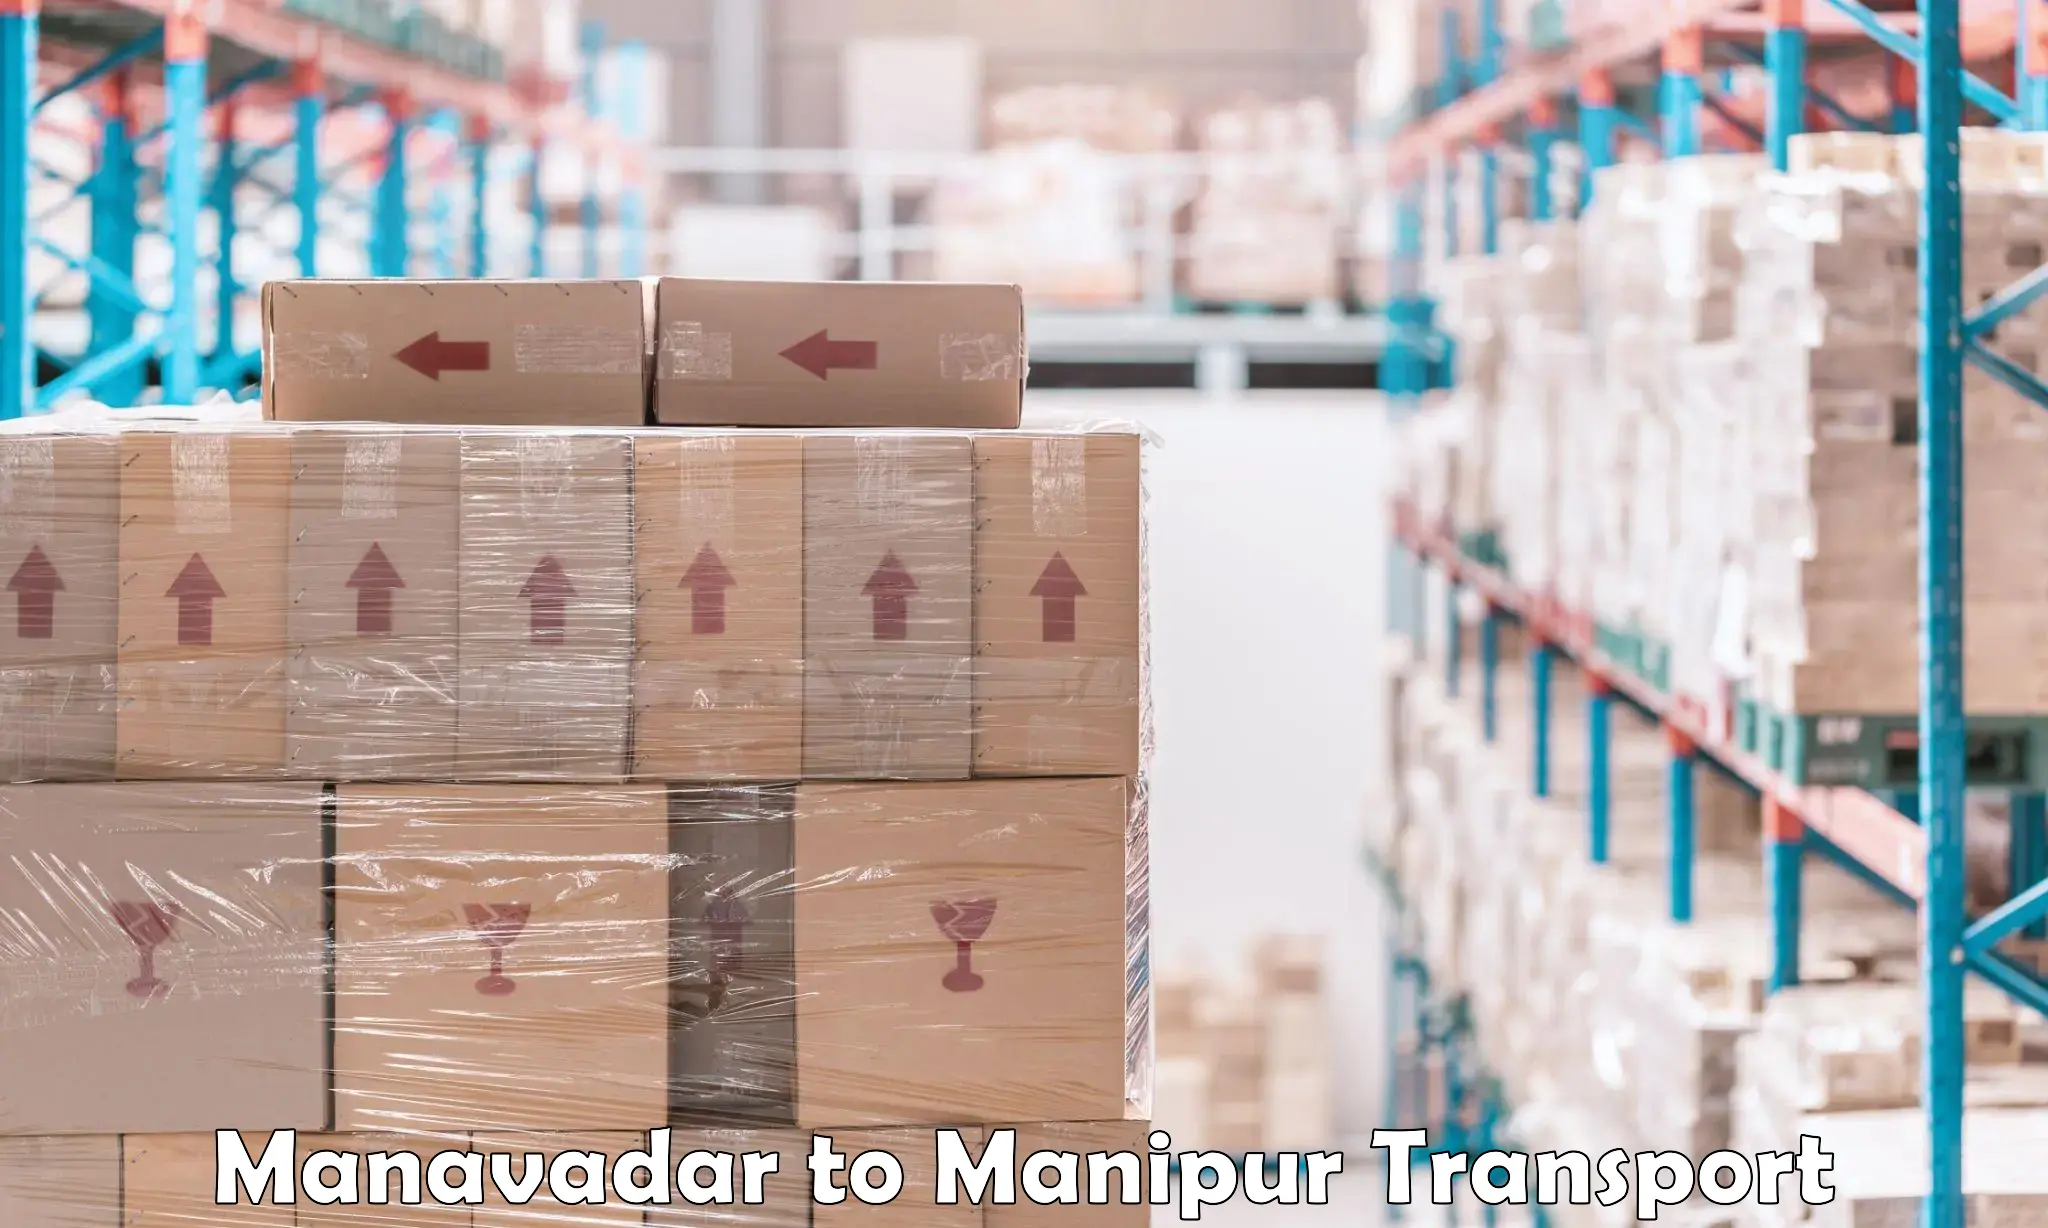 Container transport service Manavadar to Churachandpur